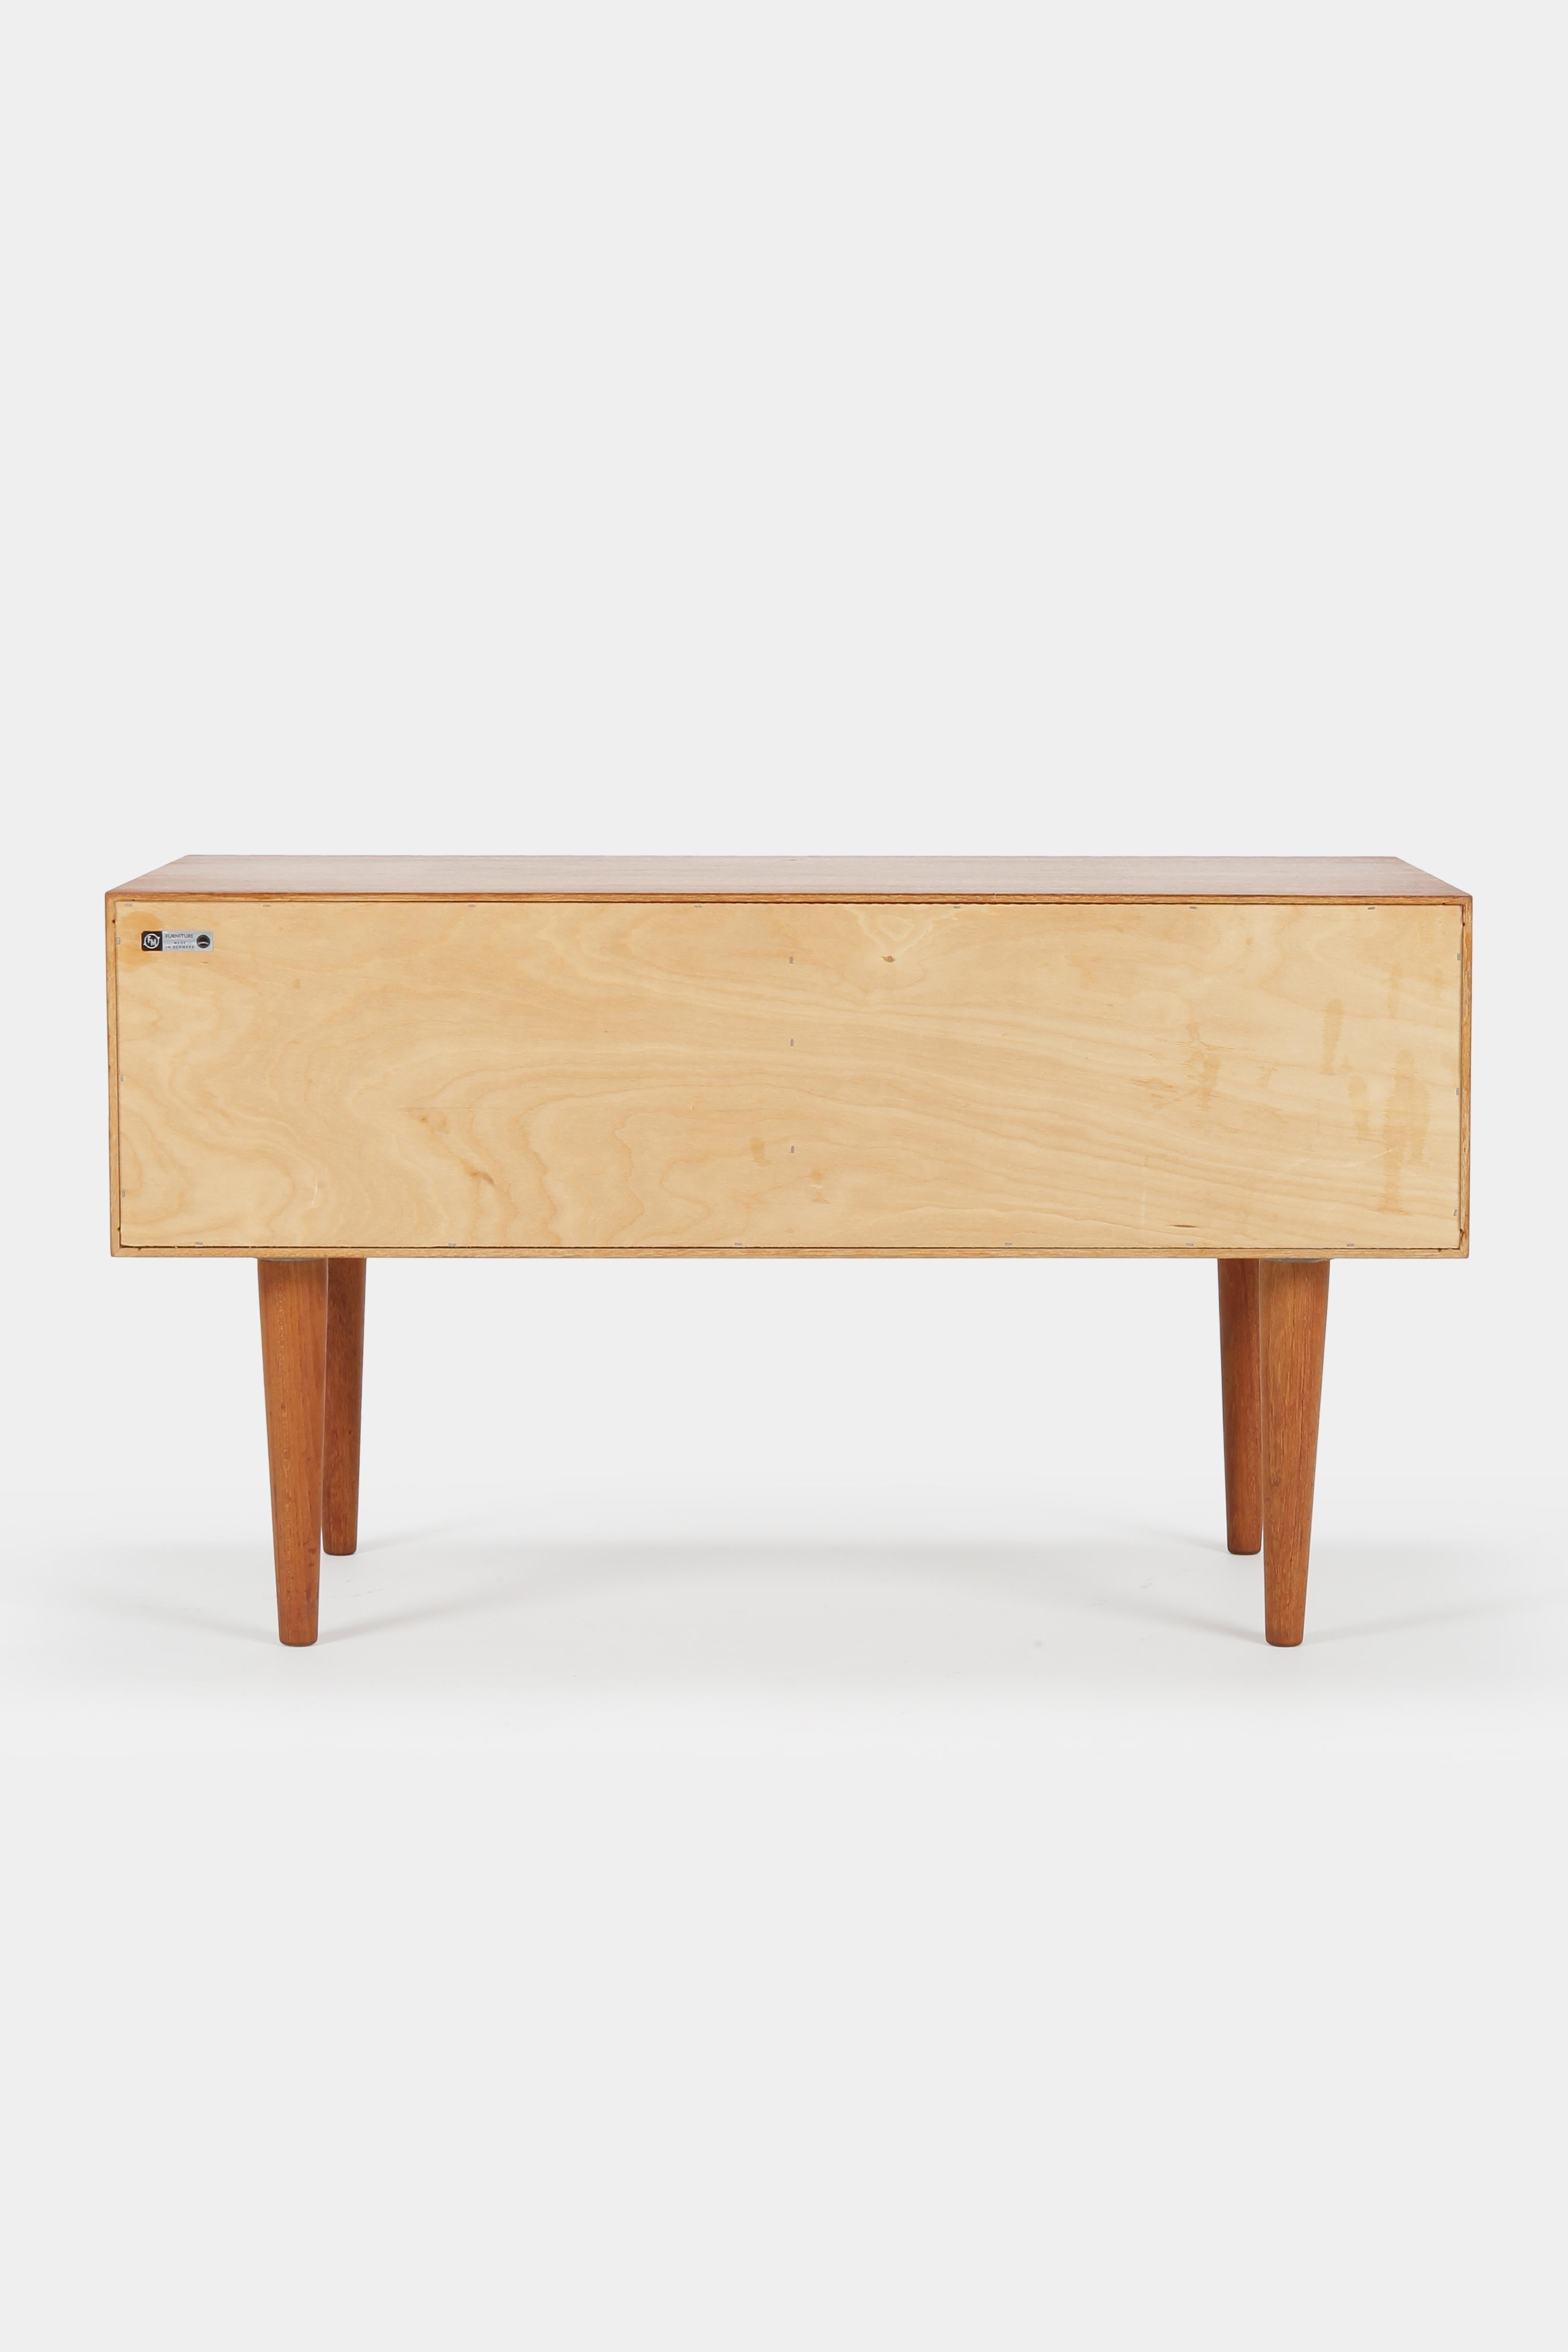 Kai Kristiansen Small Teak Dresser Midcentury modern Danish Design, 1960s For Sale 2